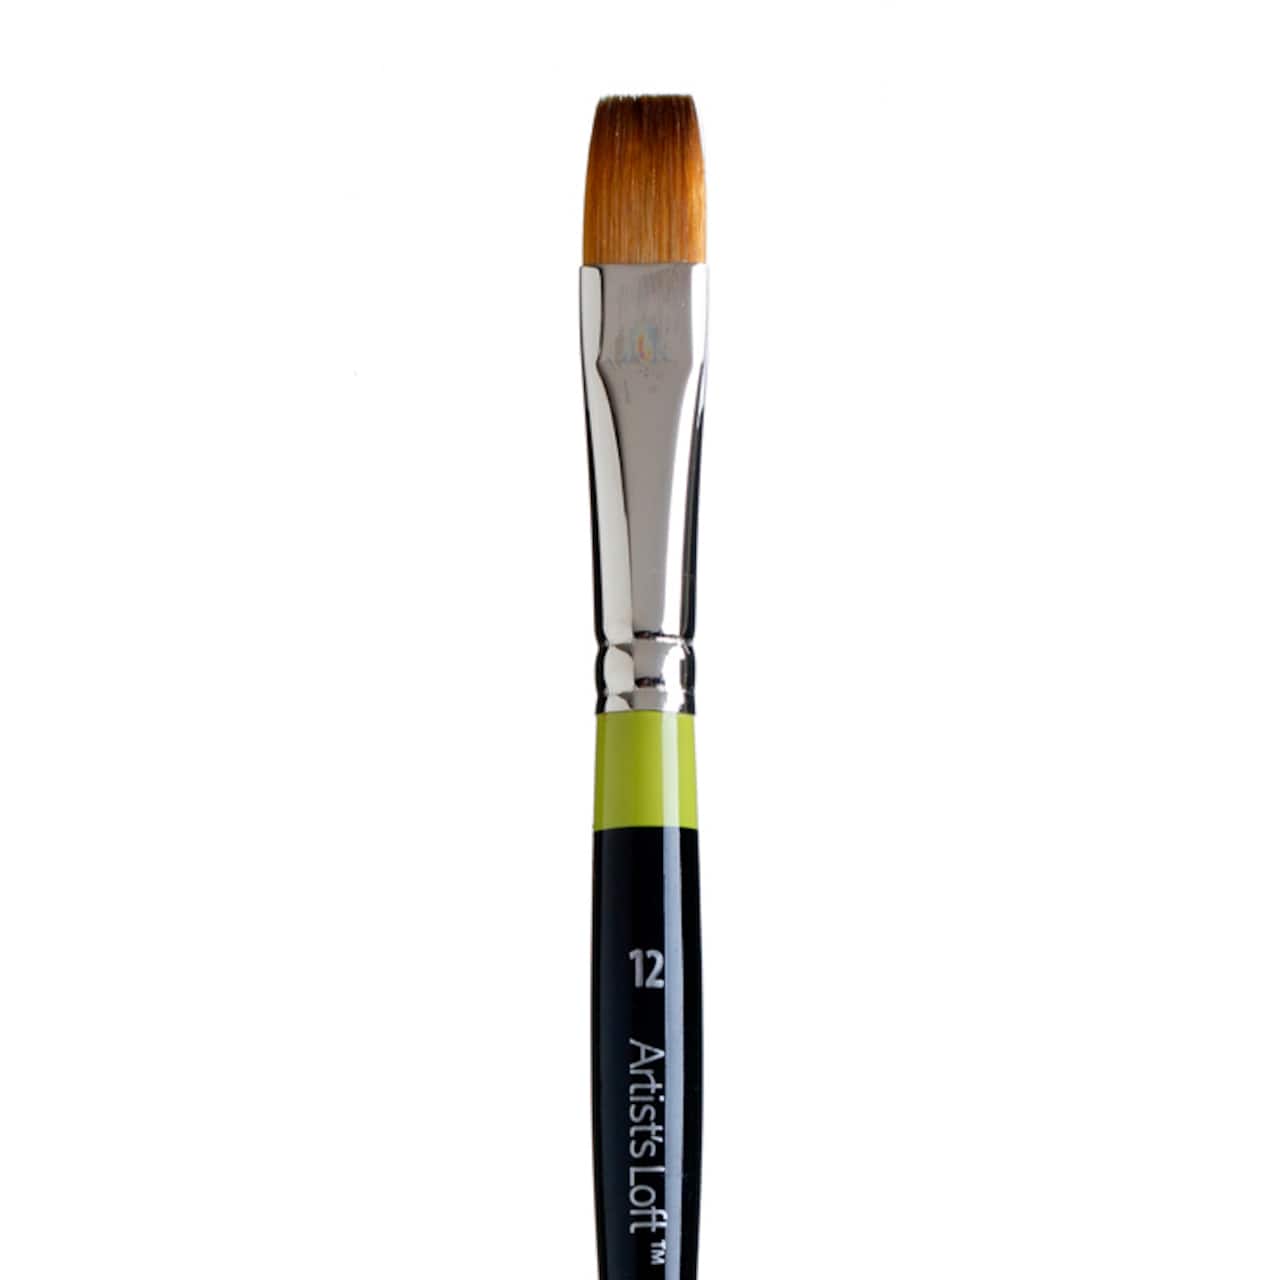 Golden Taklon Short Handle Flat Shader Brush by Artist&#x27;s Loft&#x2122; Vienna